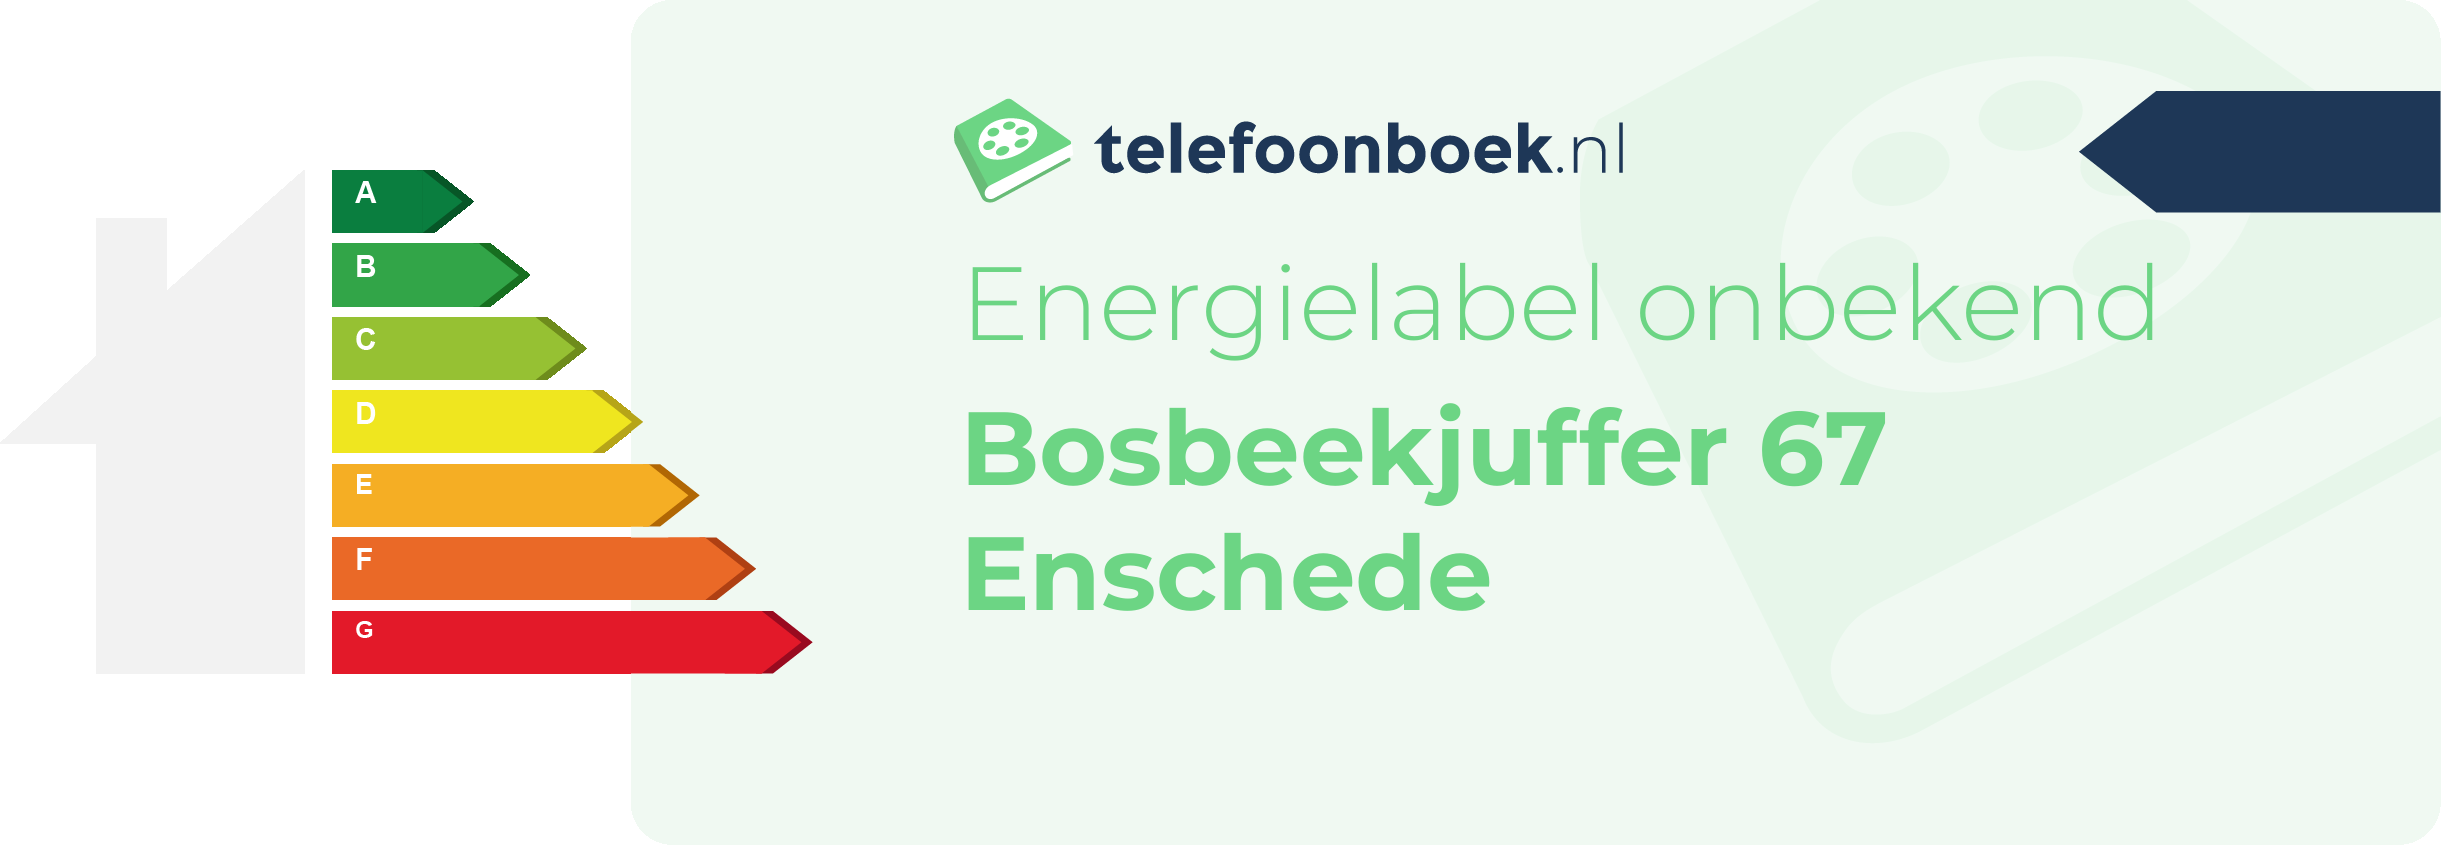 Energielabel Bosbeekjuffer 67 Enschede